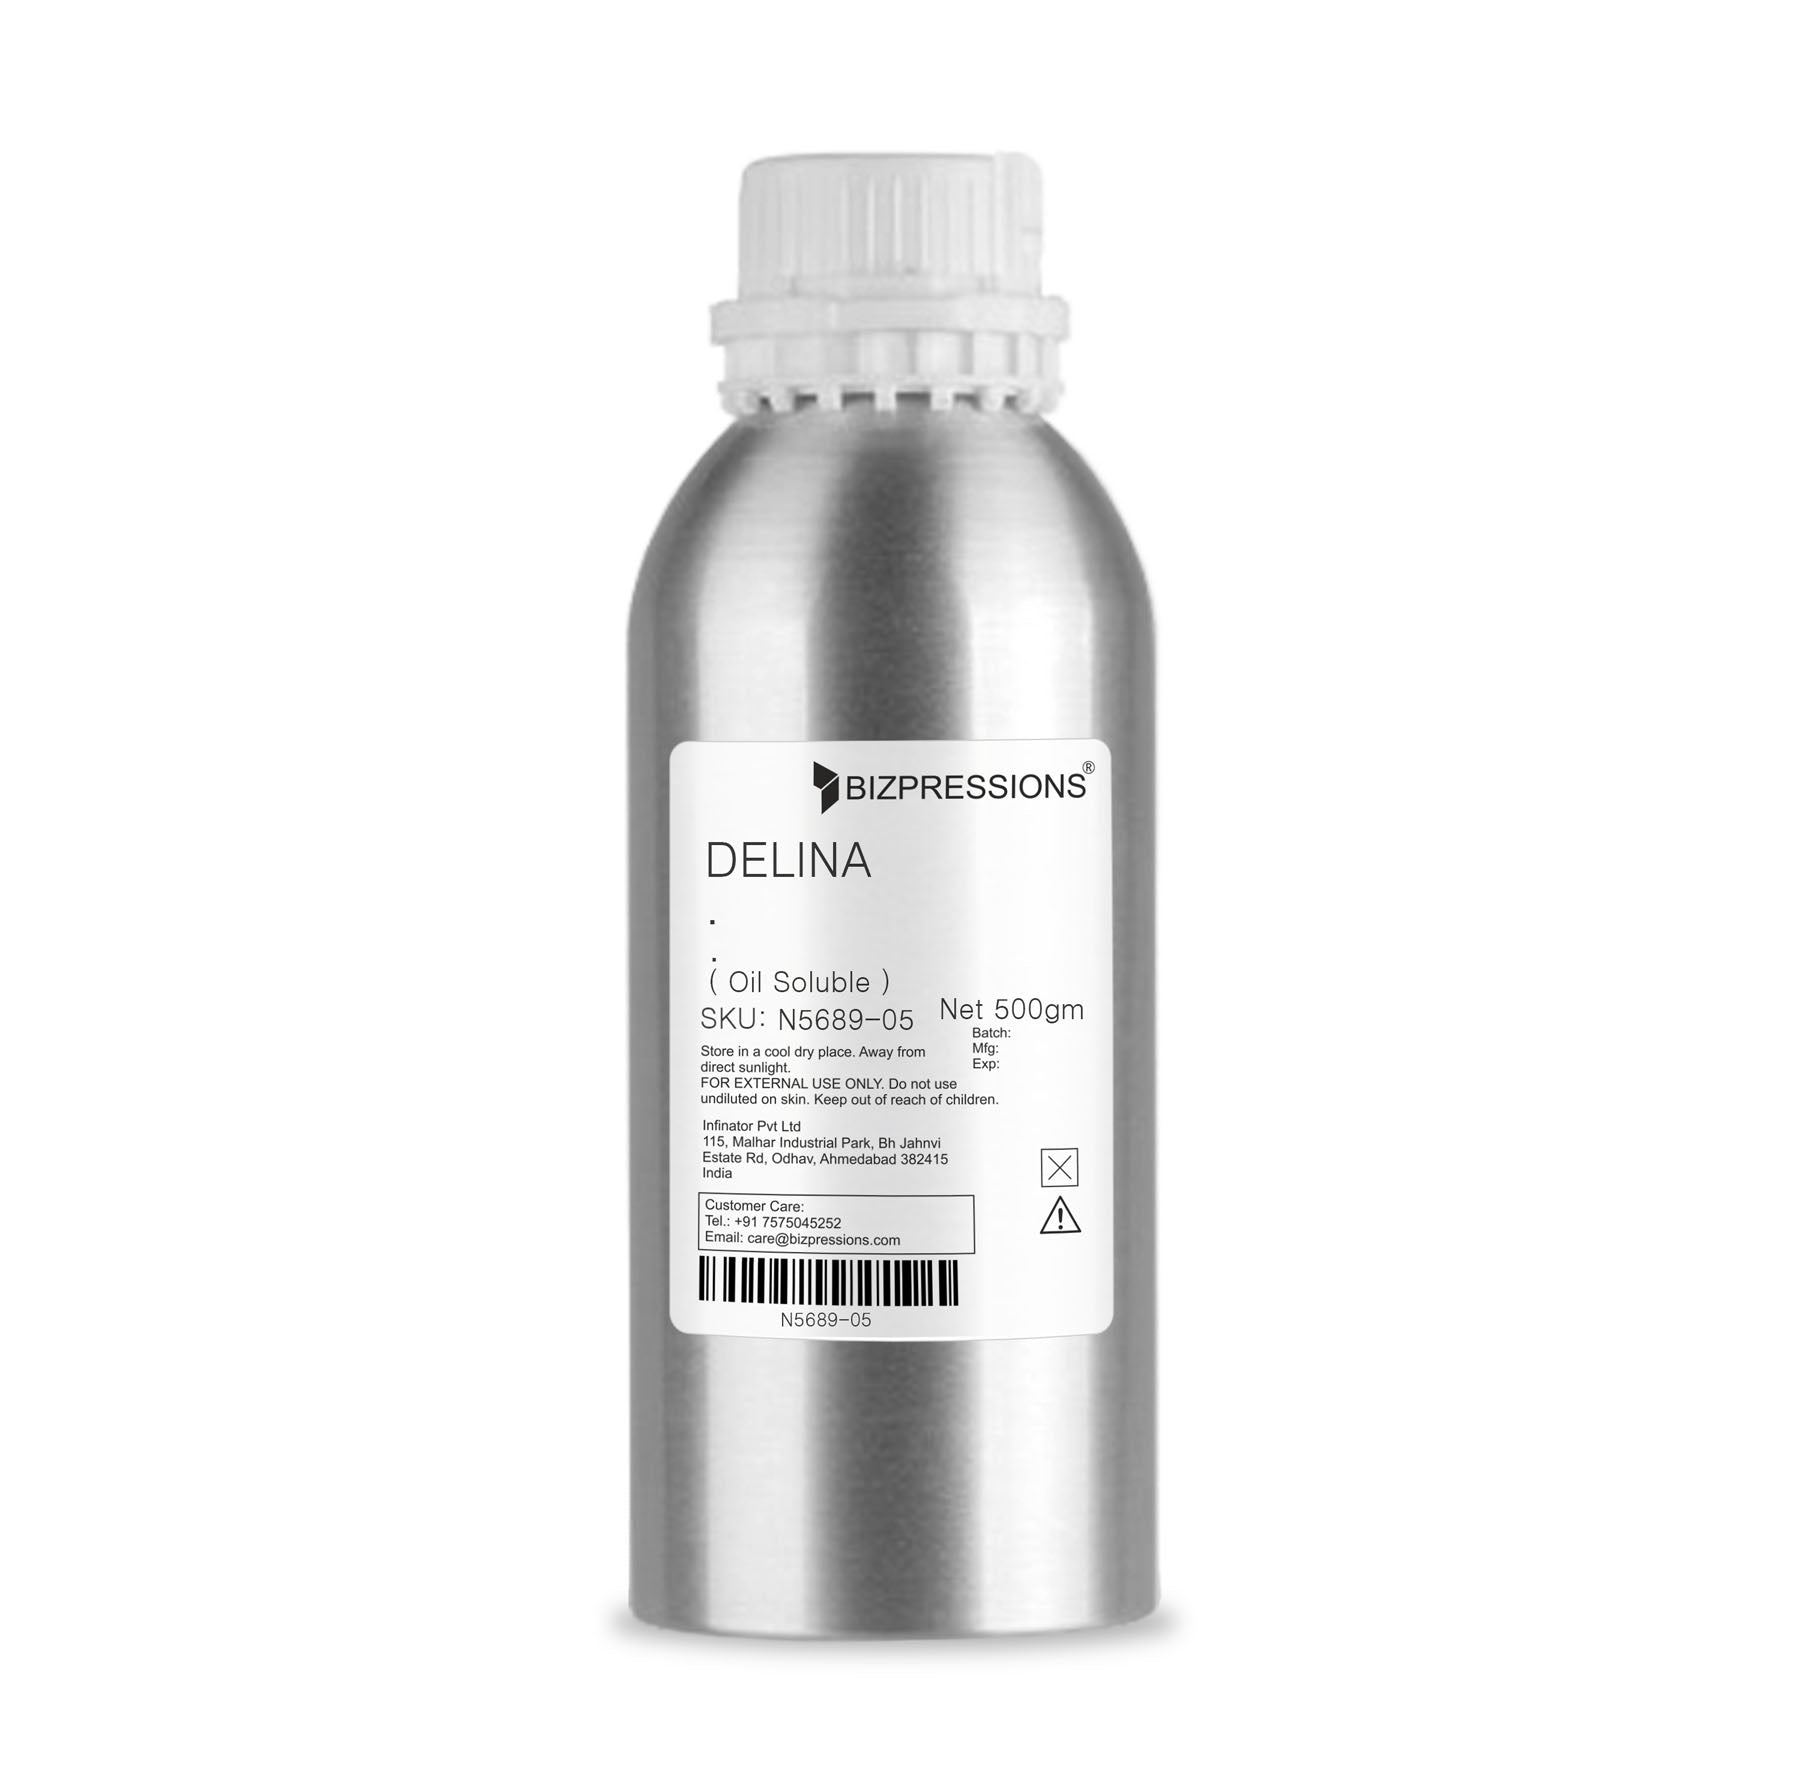 DELINA - Fragrance ( Oil Soluble ) - 500 gm